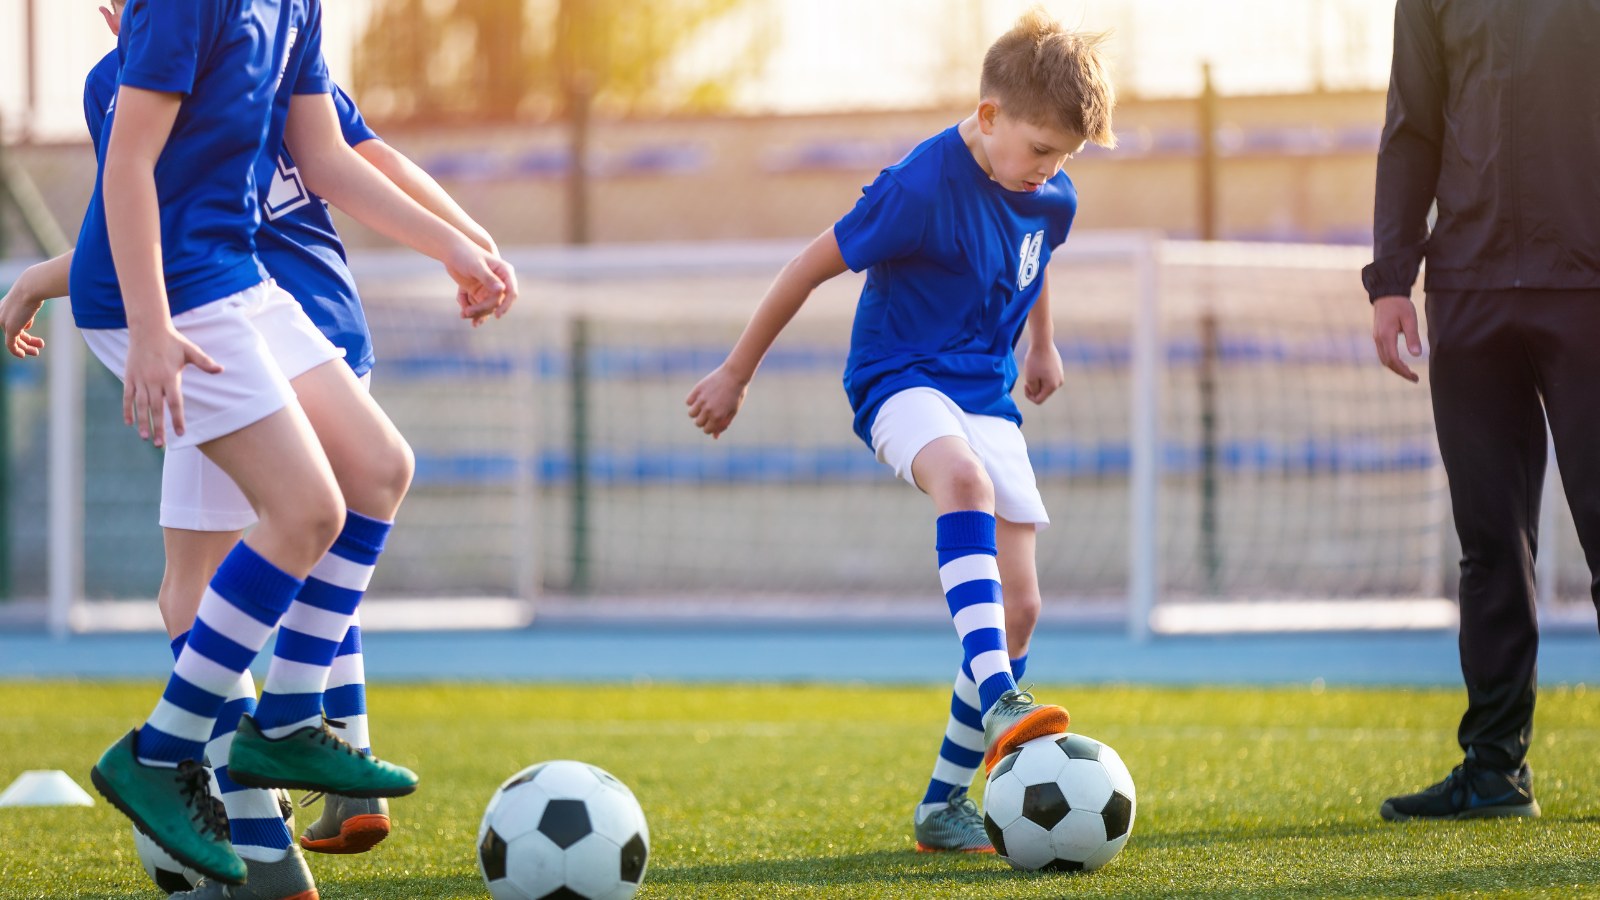 Dành thời gian để tham gia vào các hoạt động thể thao sẽ mang lại nhiều lợi ích về sức khỏe và phát triển cho trẻ. 